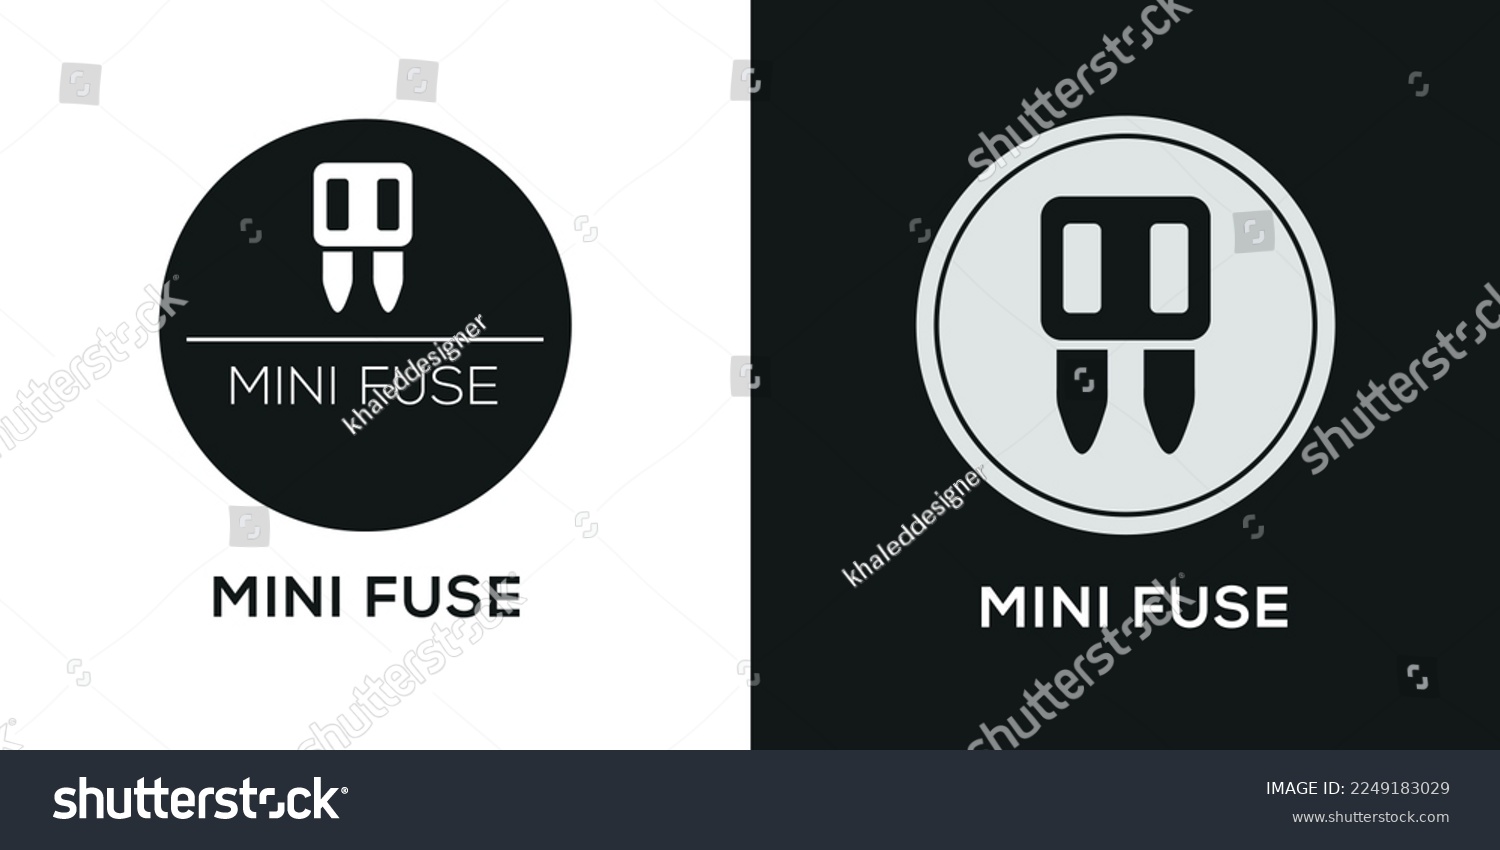 SVG of Creative (Mini Fuse) Icon, Vector sign. svg